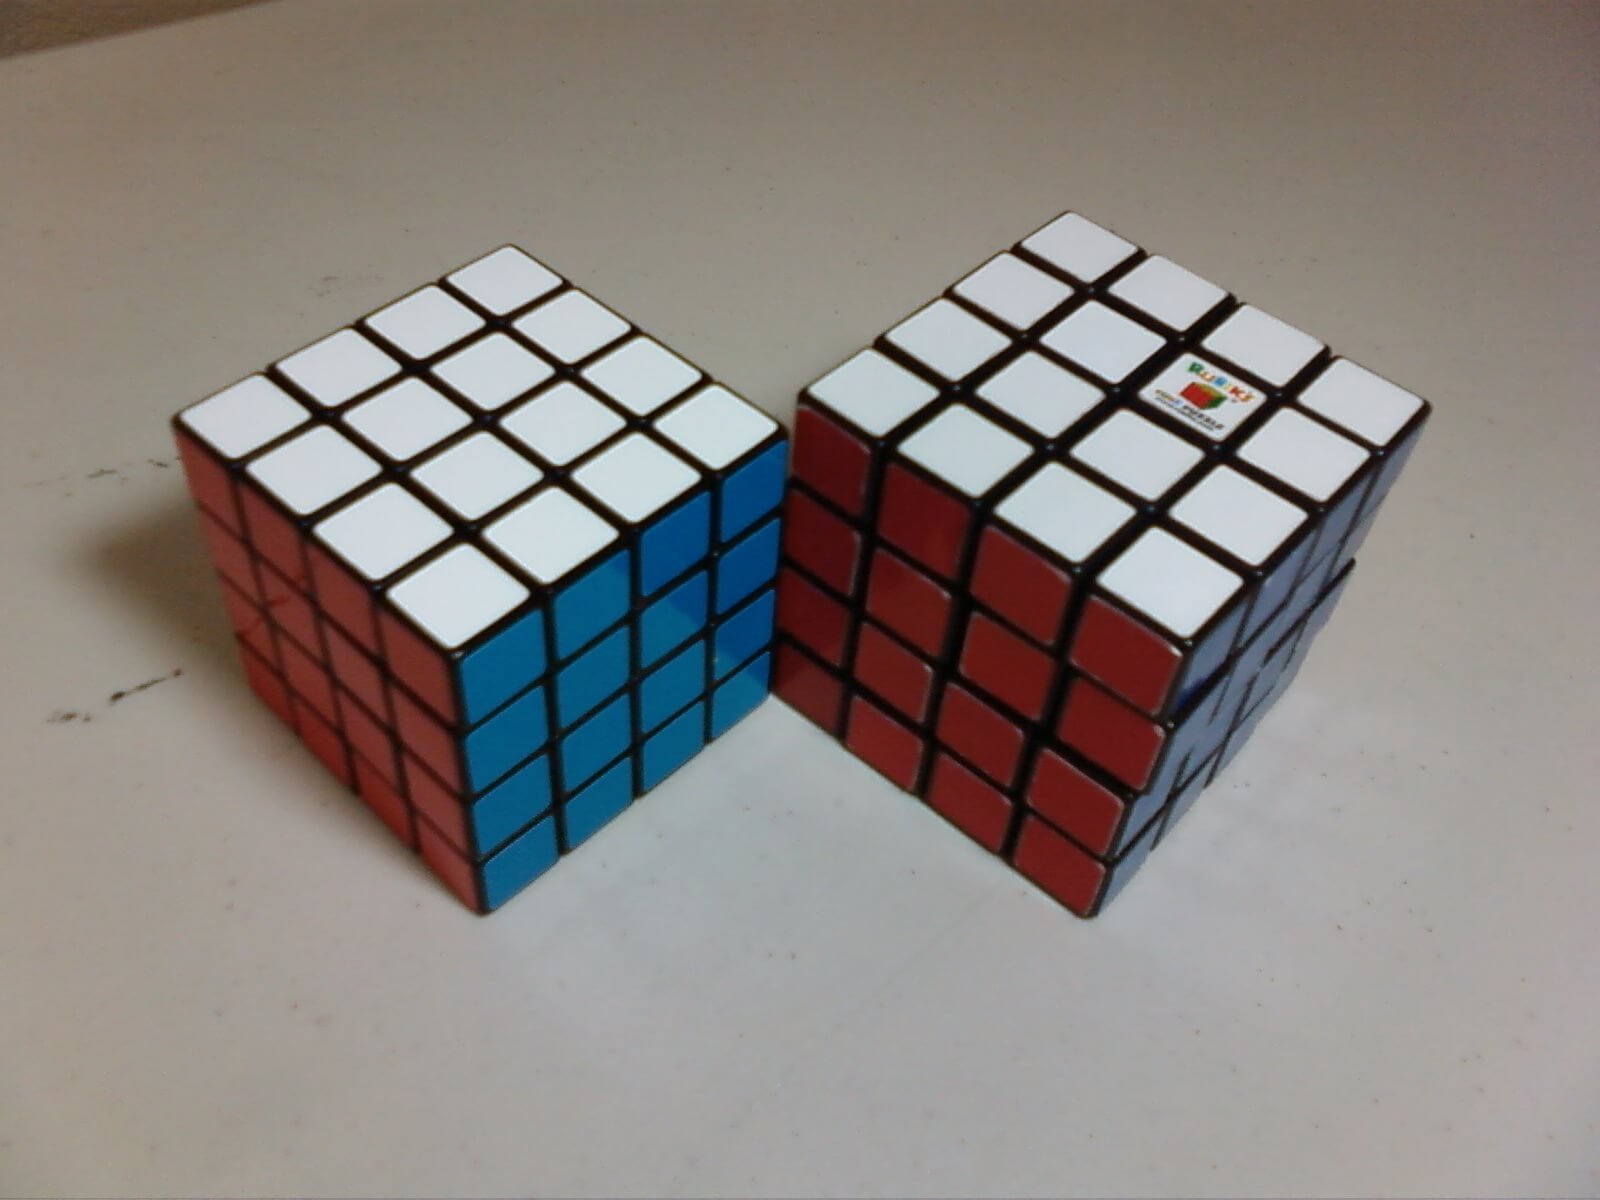 Cách lắp Rubik 2x2, 3x3, 4x4 khi bị vỡ